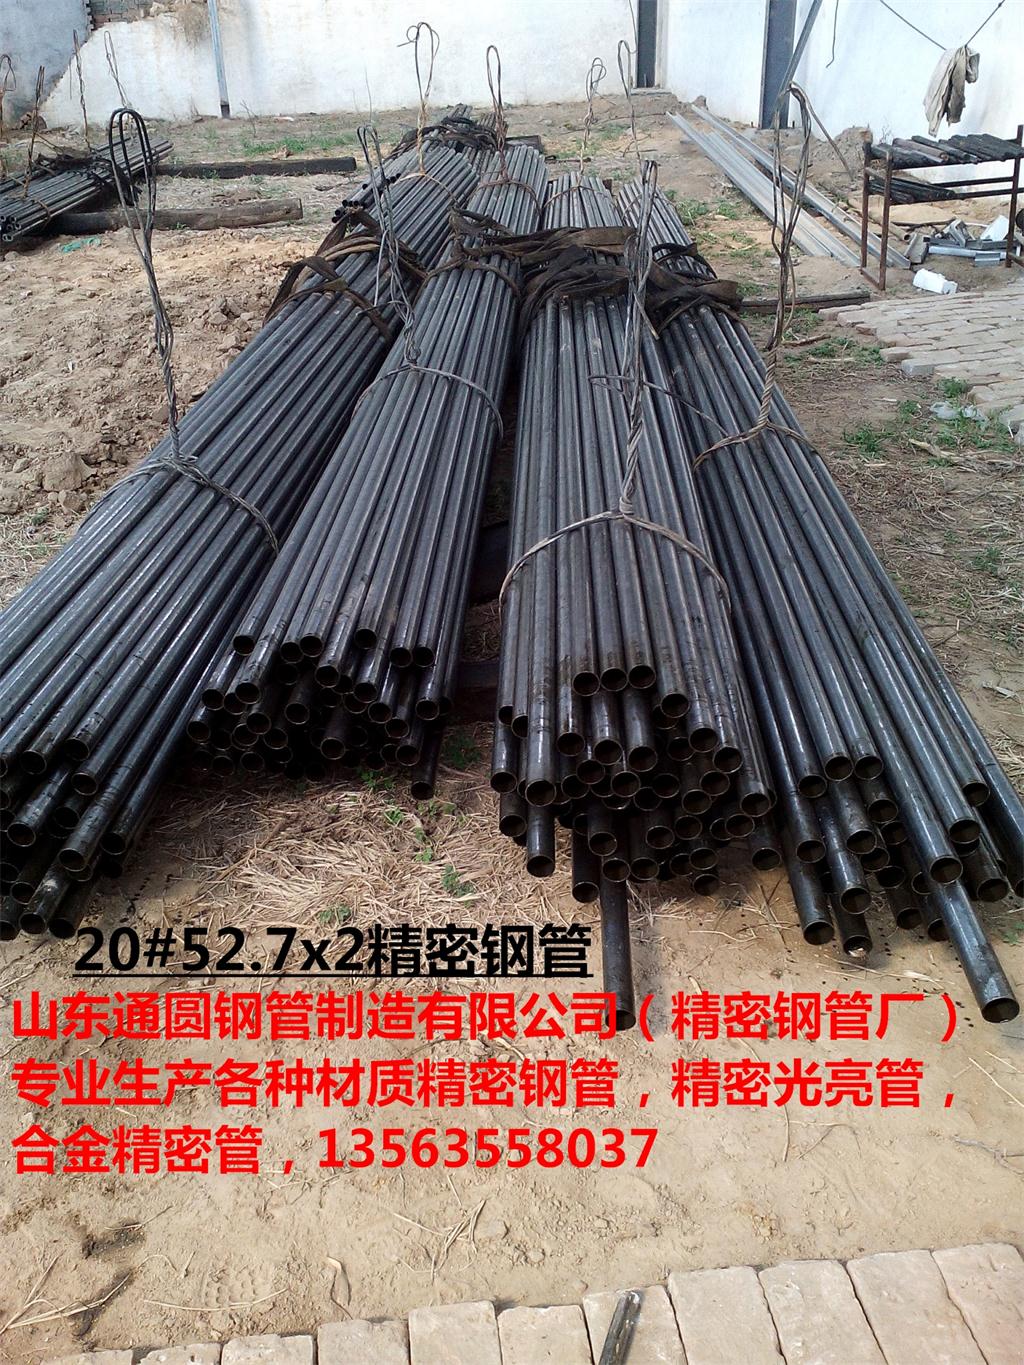 山东通圆钢管（精密钢管厂），专业生产各种材质精密钢管